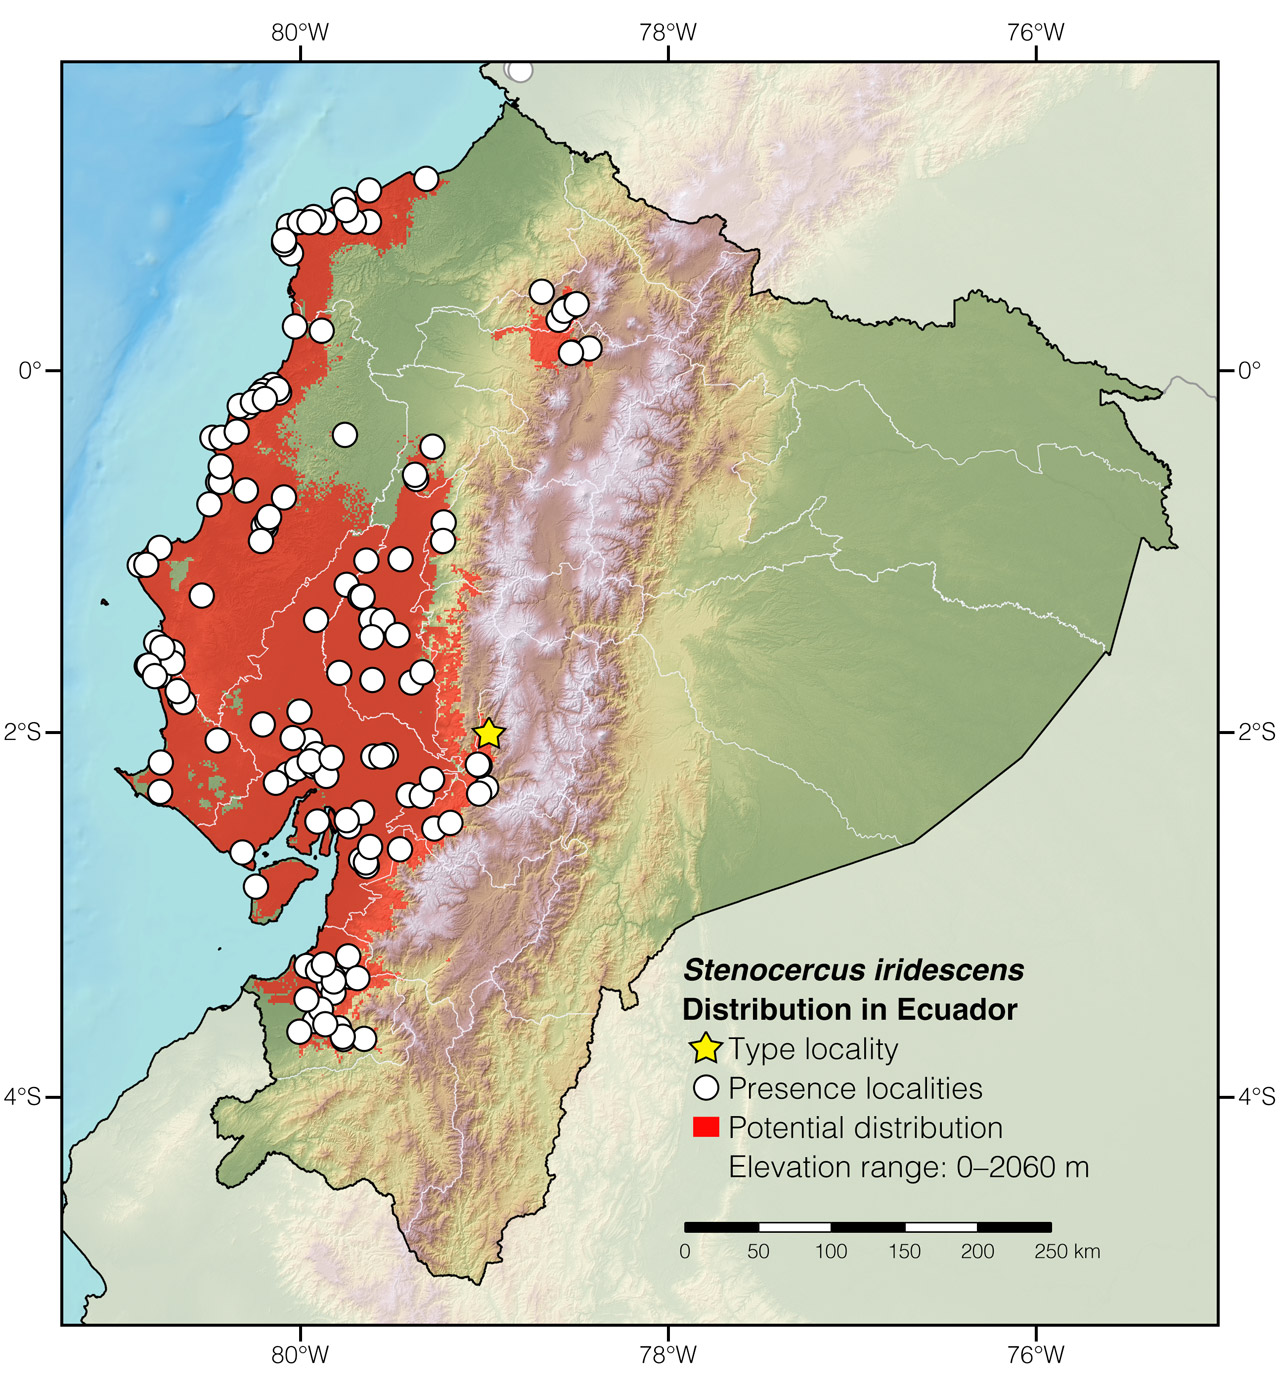 Distribution of Stenocercus iridescens in Ecuador